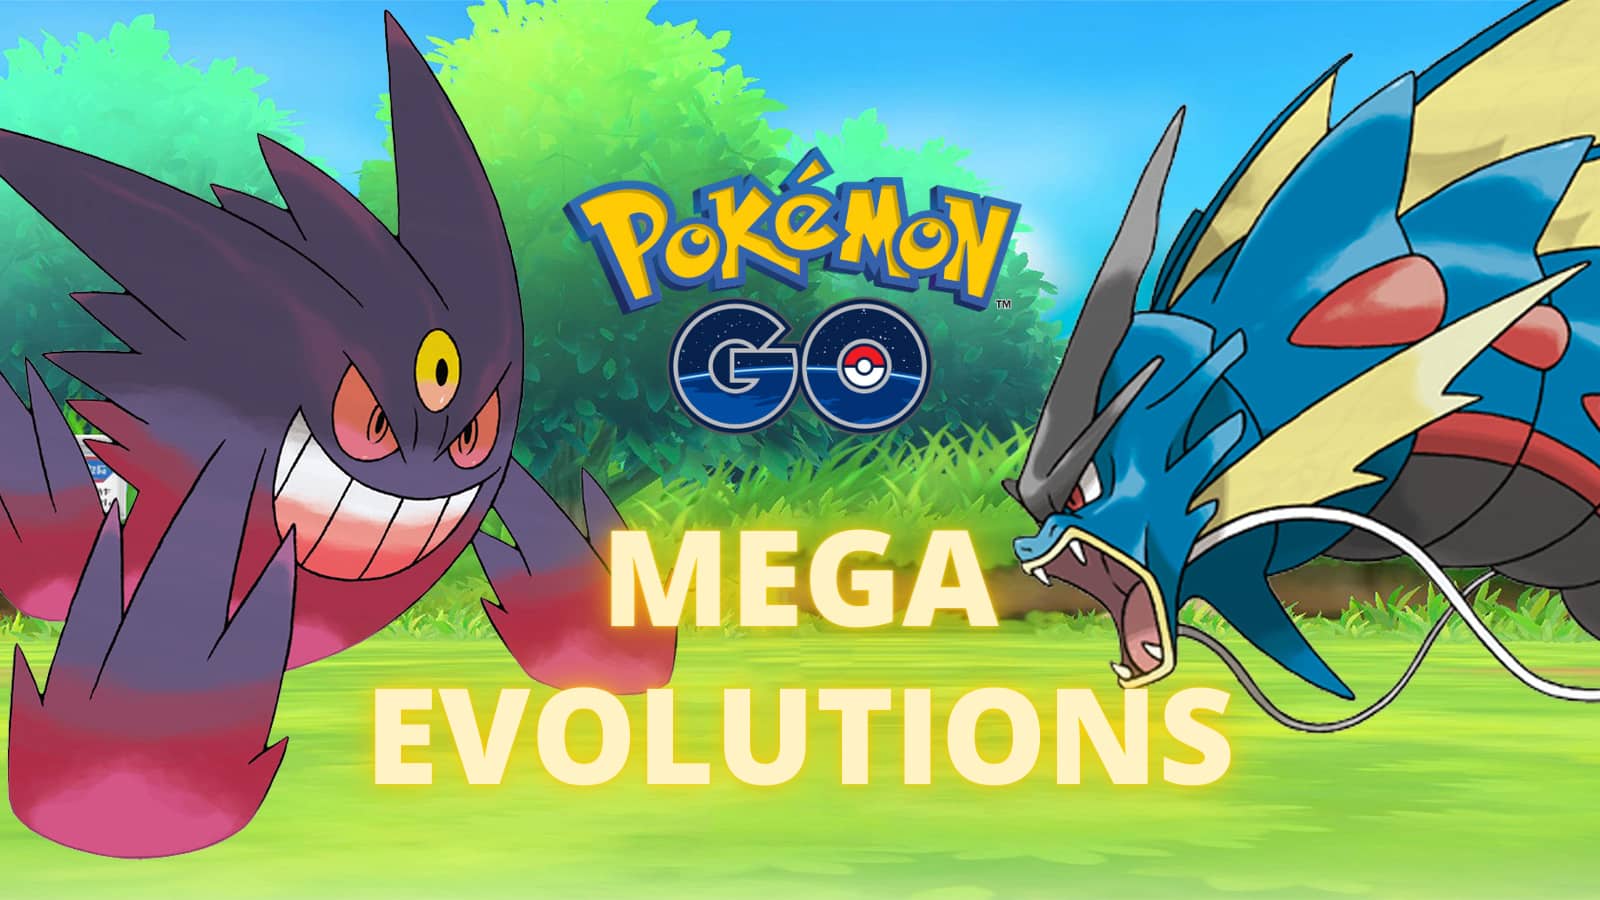 Mega Gengar and Mega Gyarados in Pokemon Goi